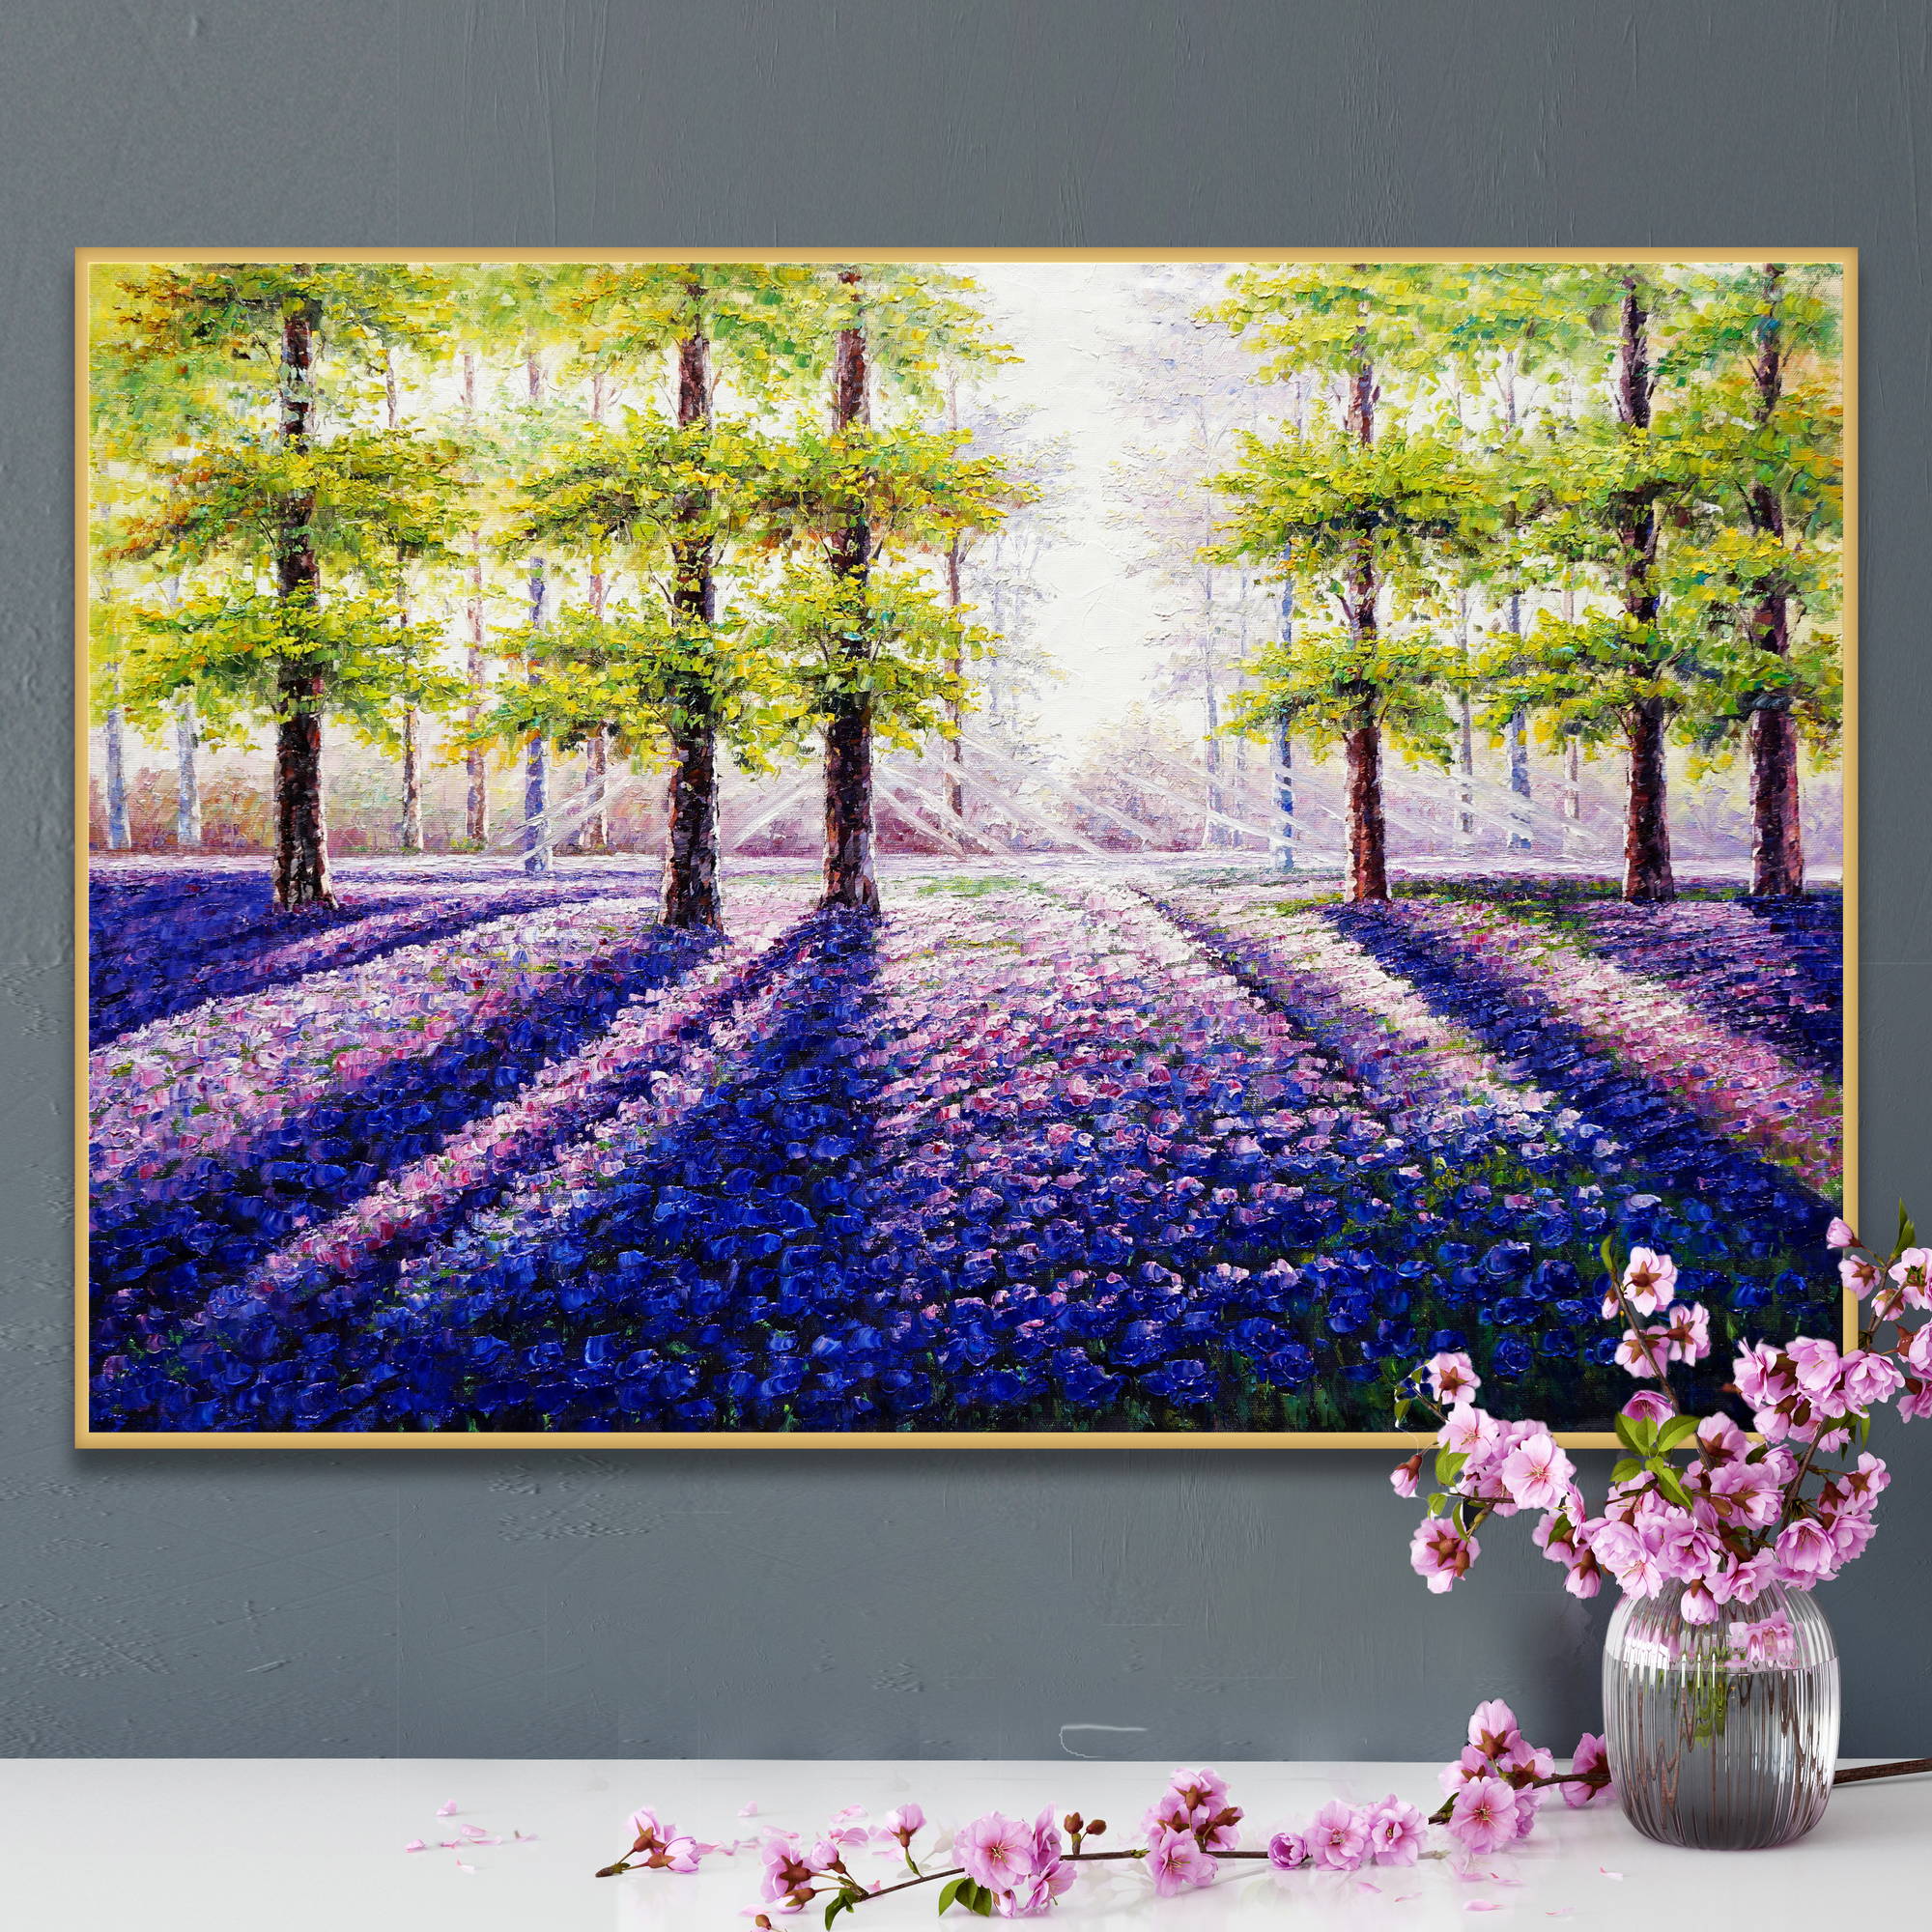 Dipinto di un bosco con alberi e fiori viola